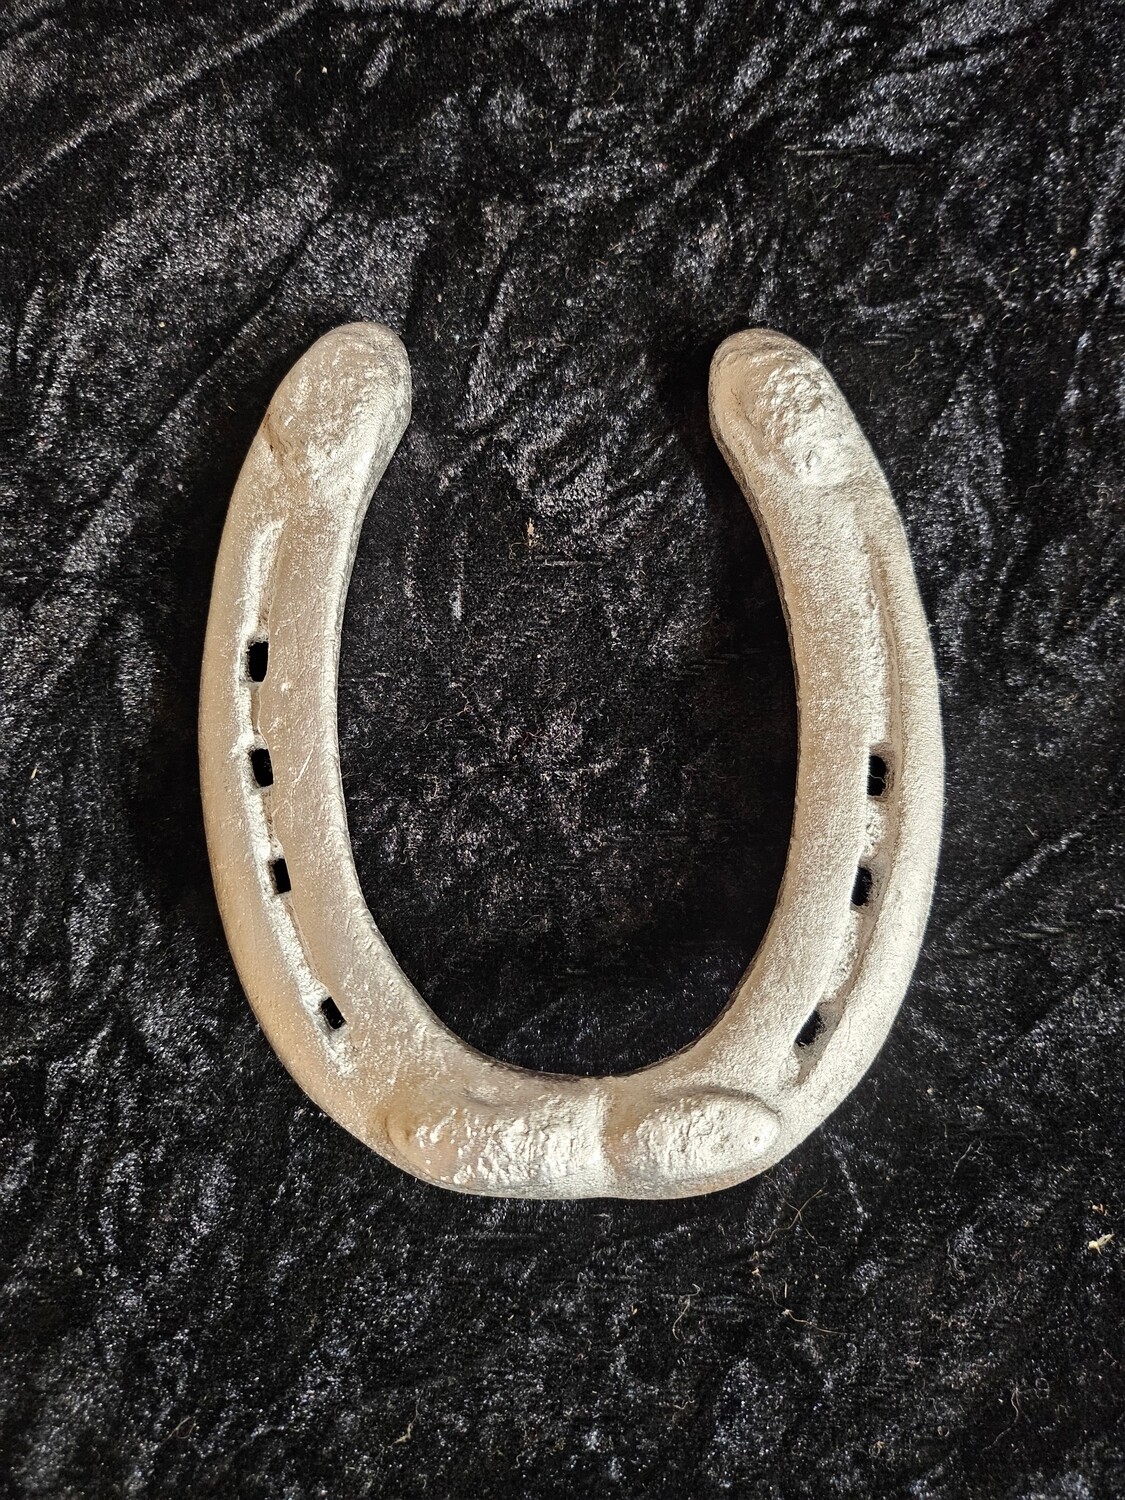 Amish horseshoe